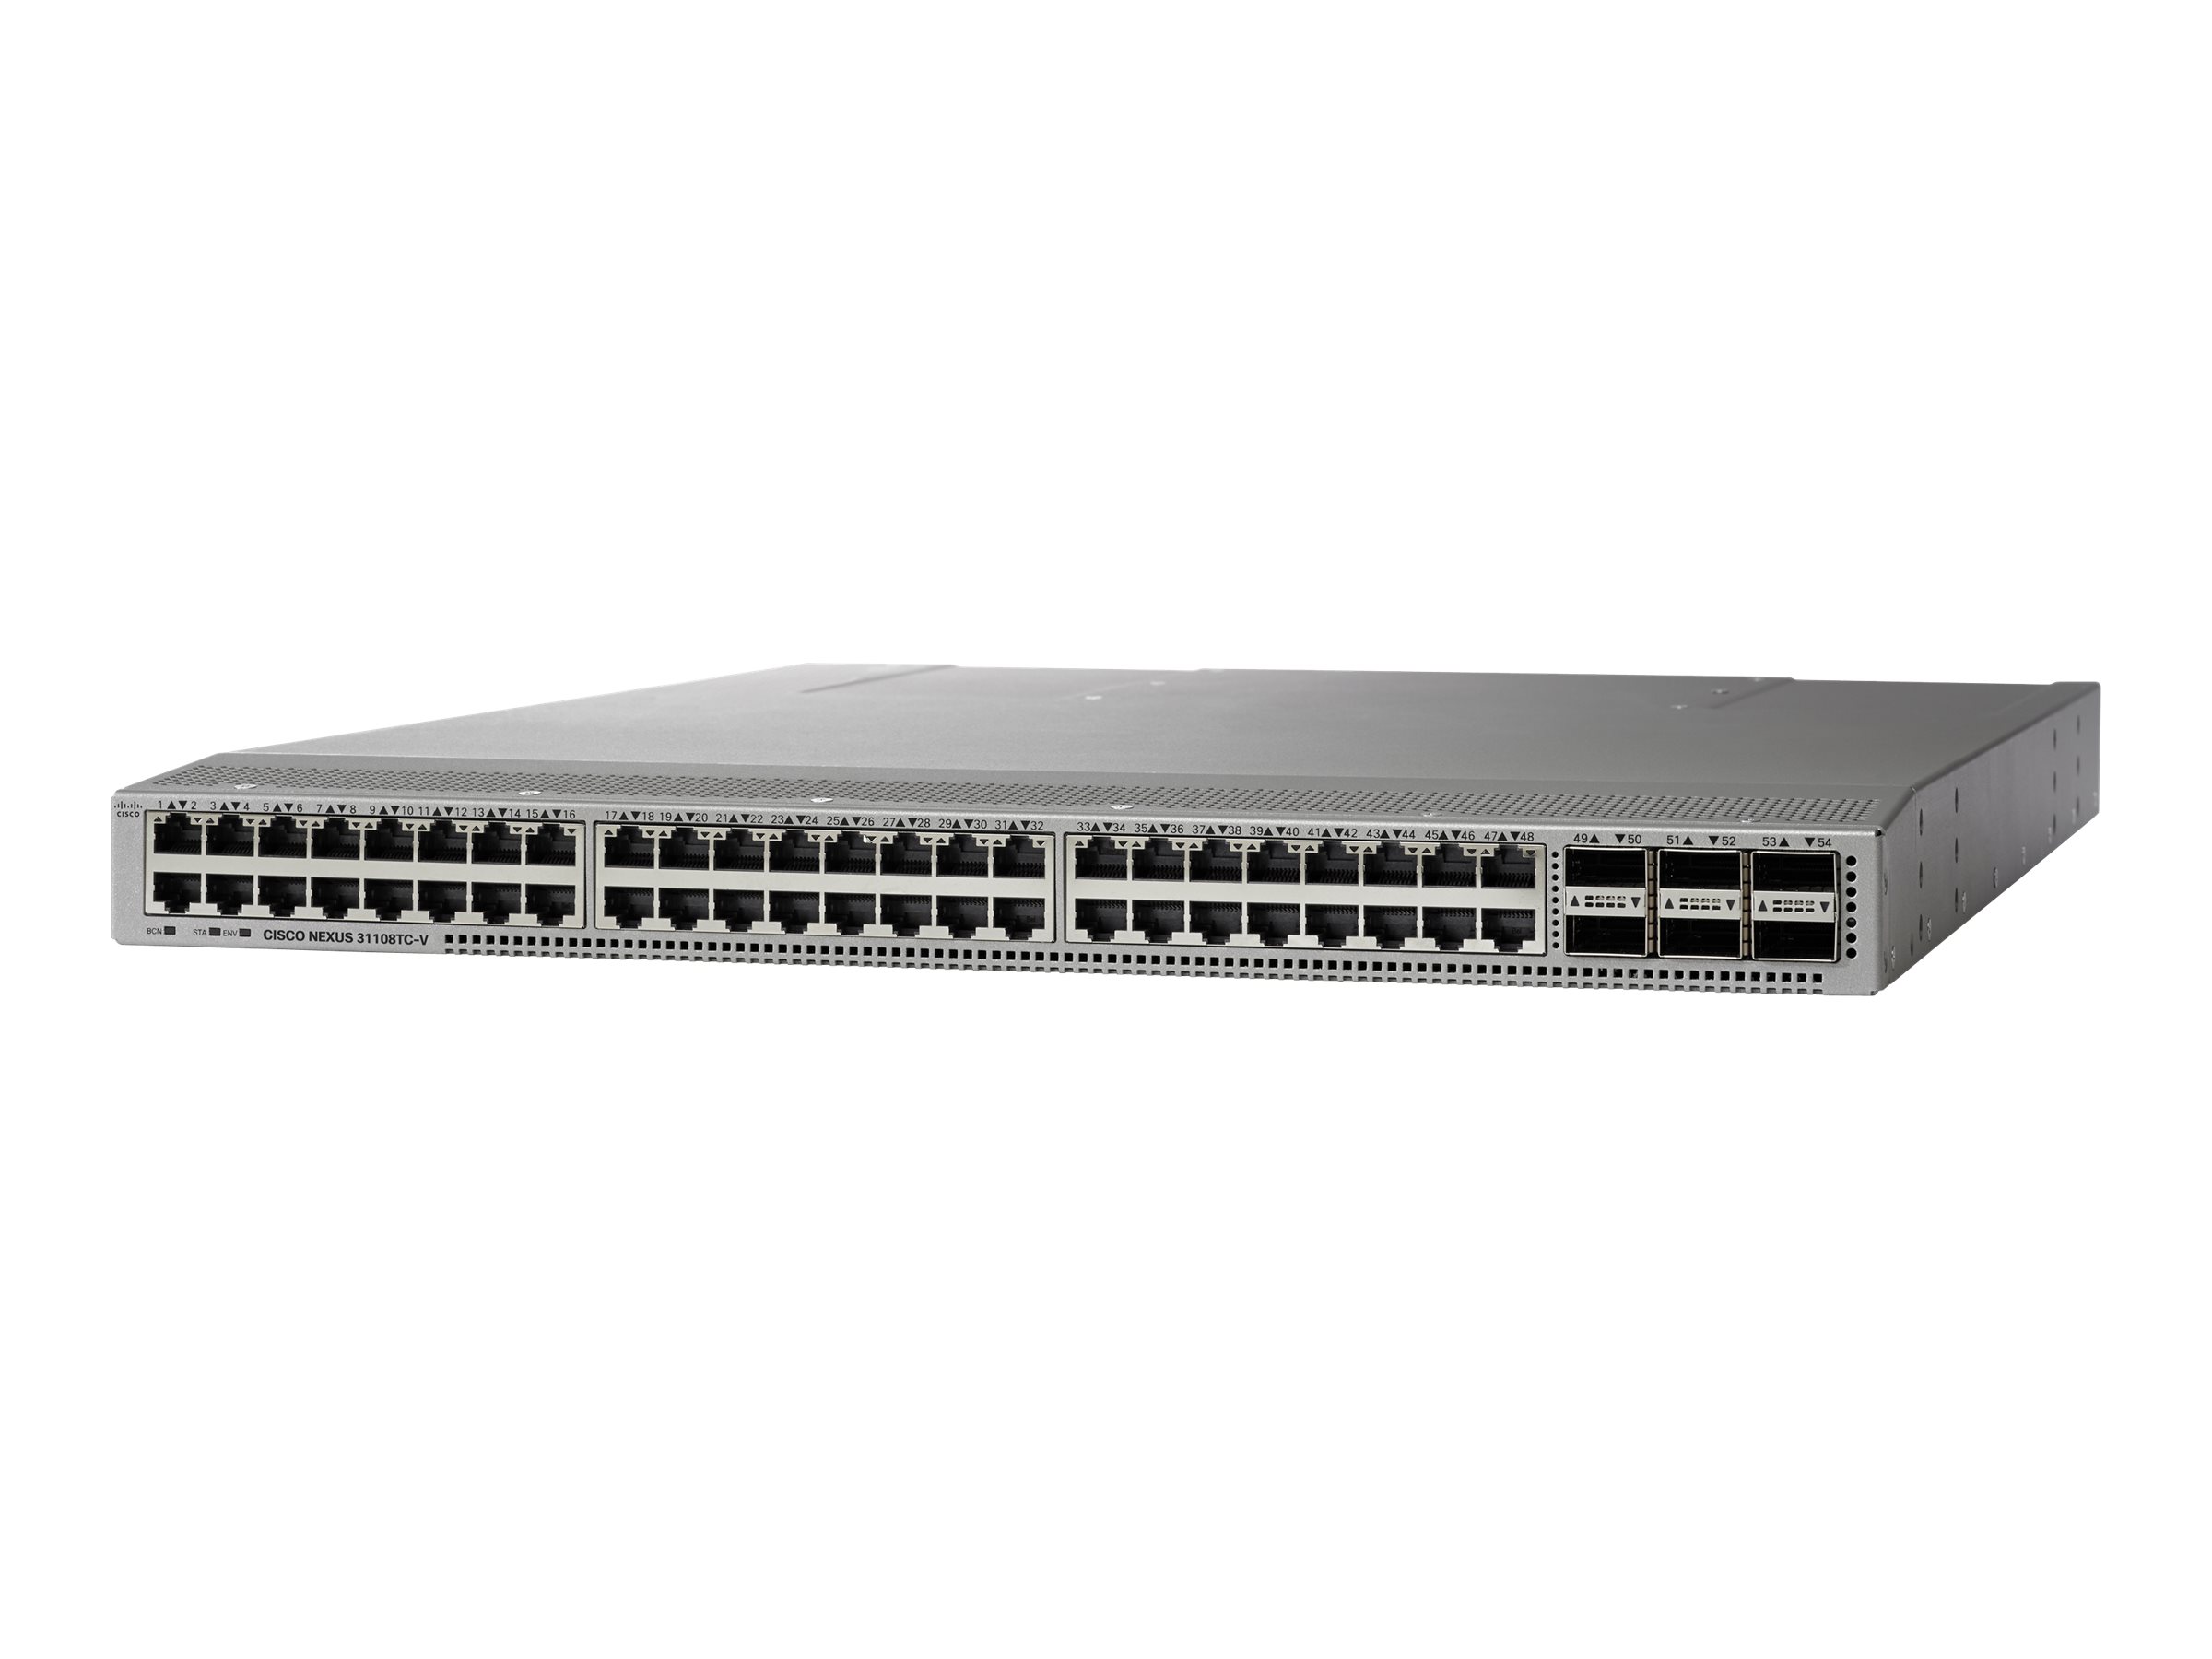 Cisco Nexus 31108TC-V - Switch - L3 - managed - 48 x 10 Gigabit Ethernet + 6 x QSFP+ - Luftstrom von vorne nach hinten